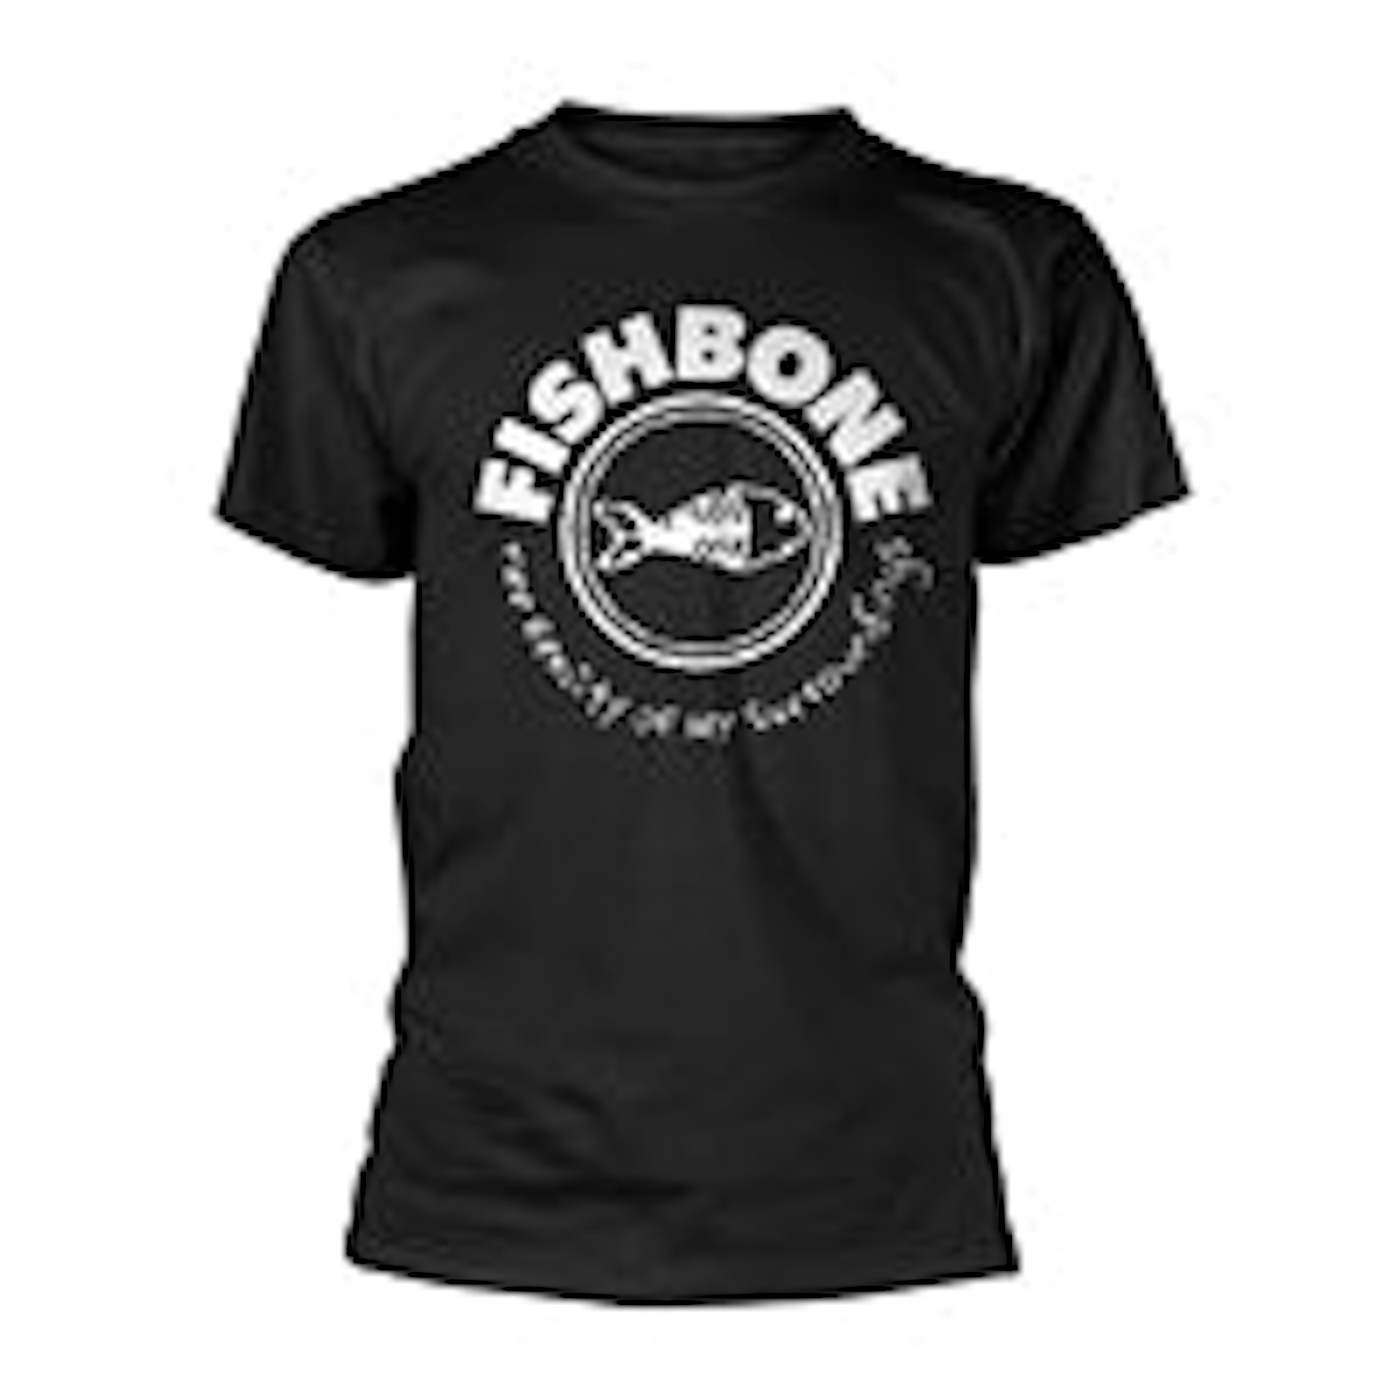 Fishbone T Shirt - The Reality Of My Surroundings